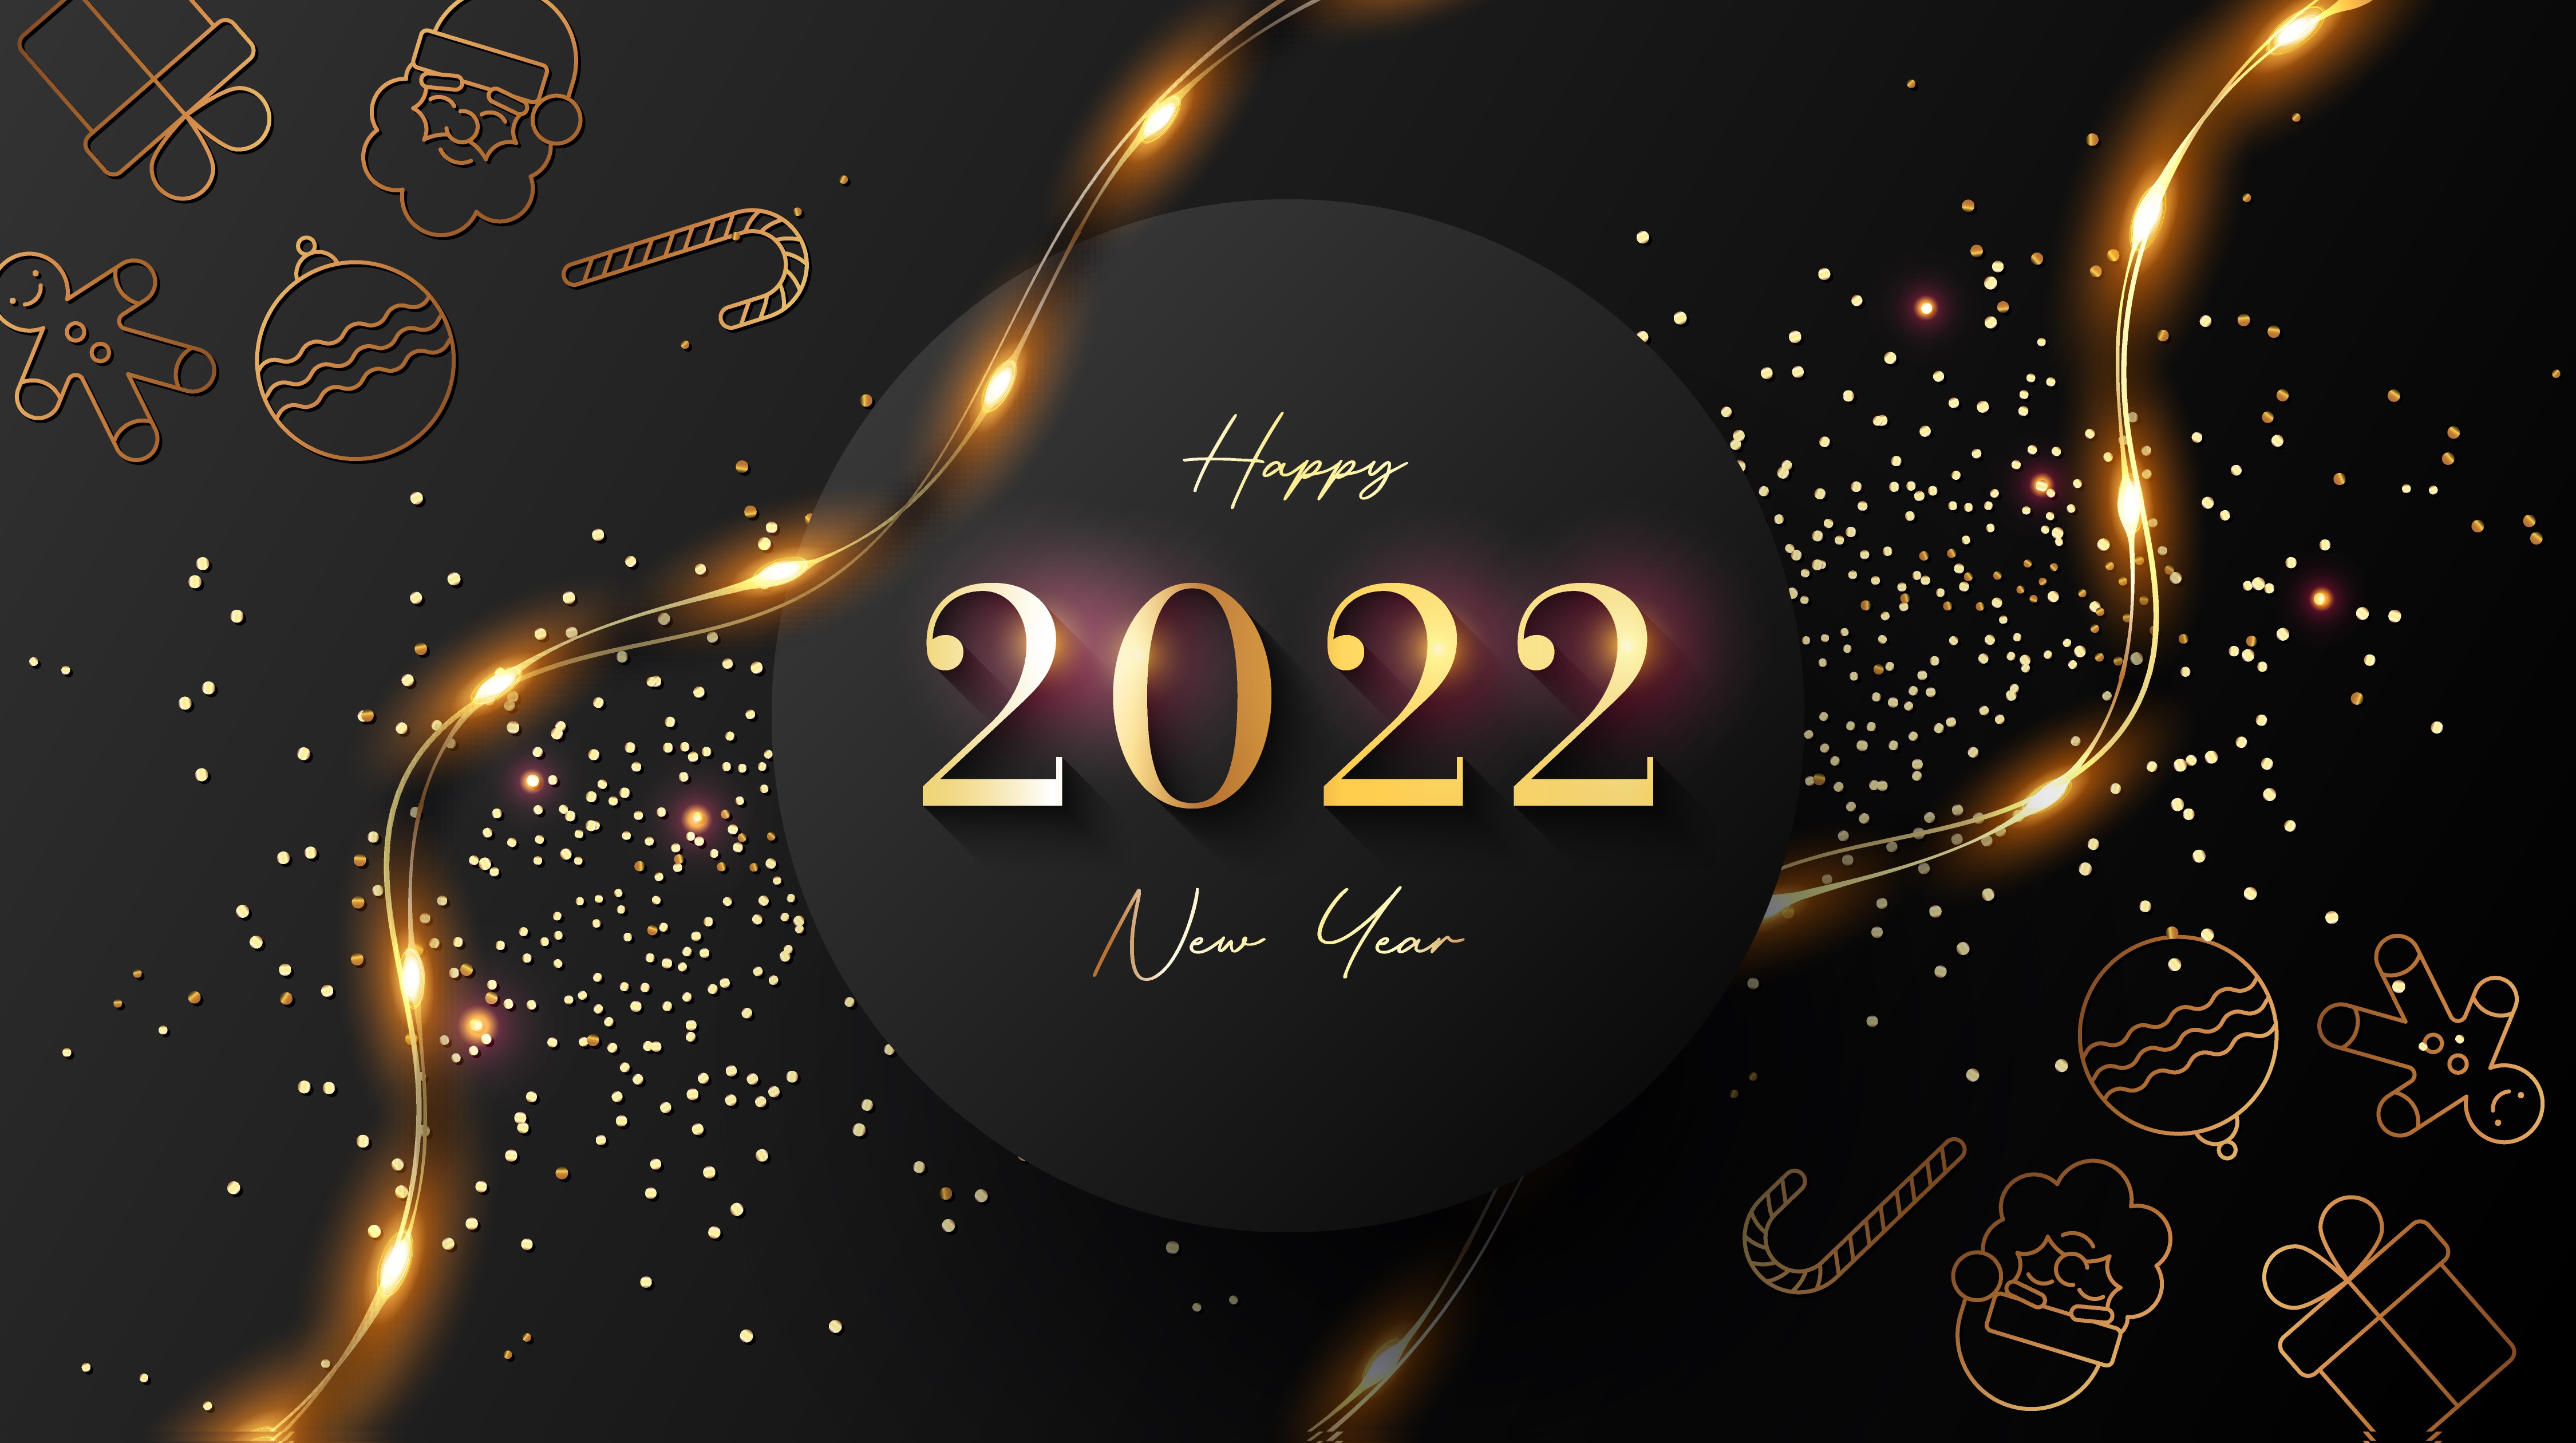 1054661 скачать обои новый год 2022, праздничные, с новым годом - заставки и картинки бесплатно